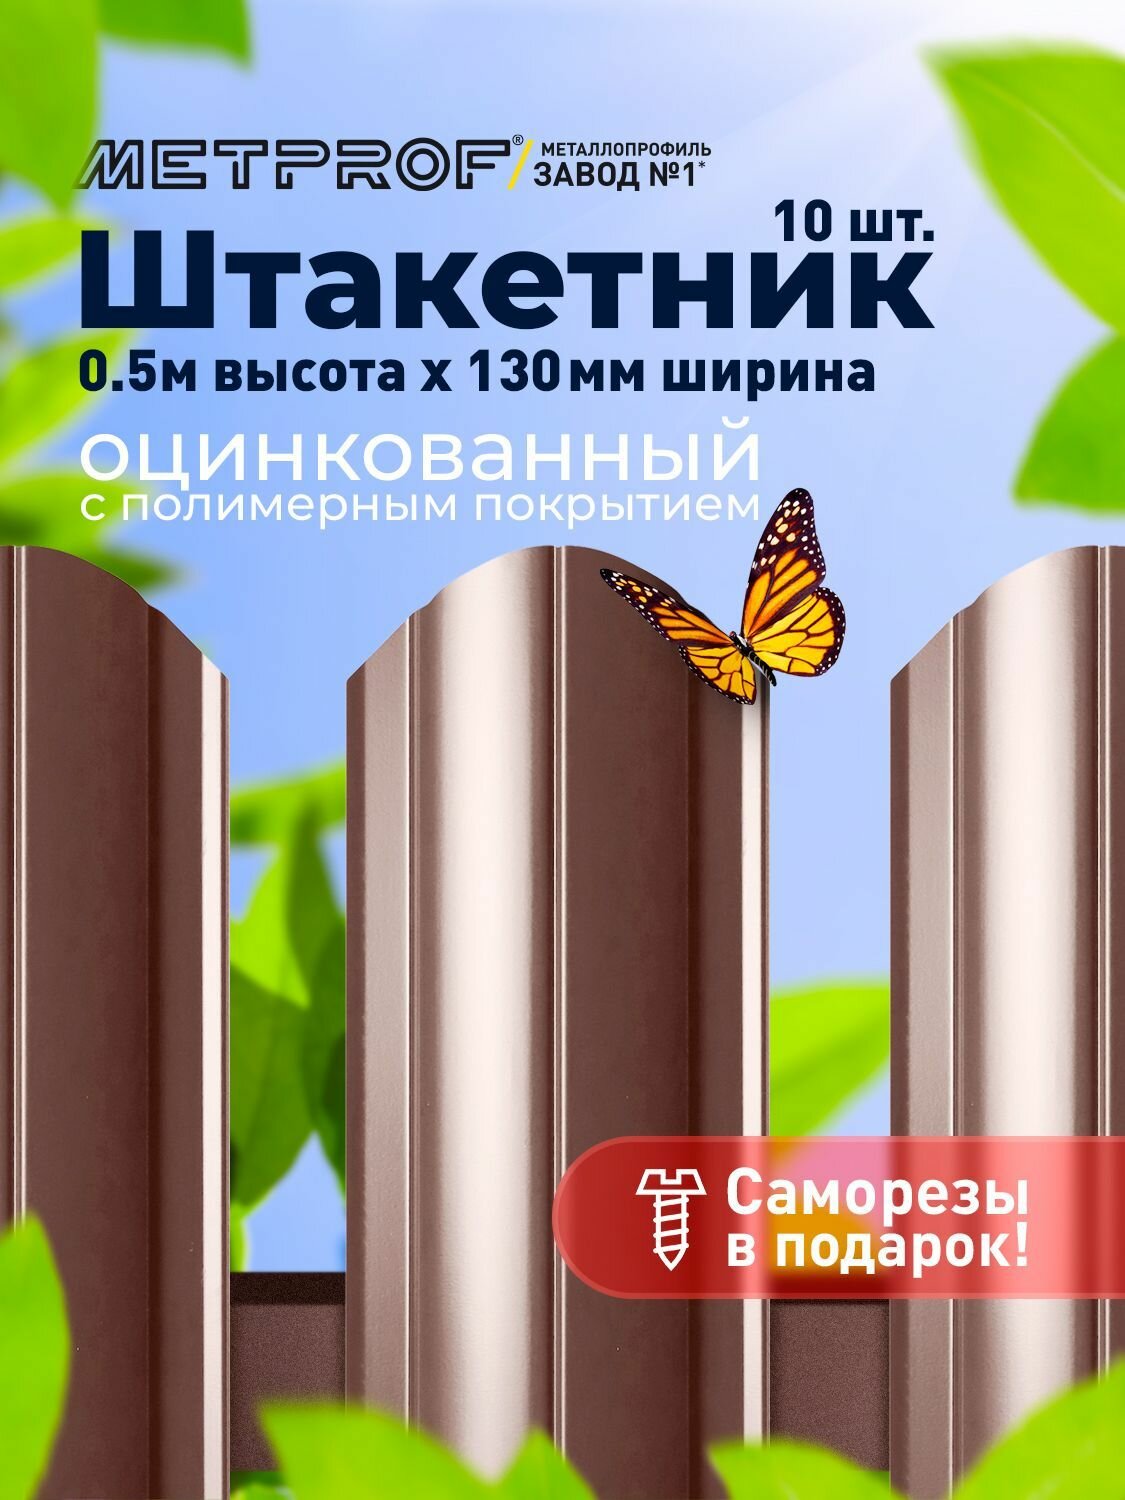 Евроштакетник Line металлический/ заборы/ 0.45 толщина, цвет 8017/ 8017 (Шоколад) 10 шт. 0.5 м